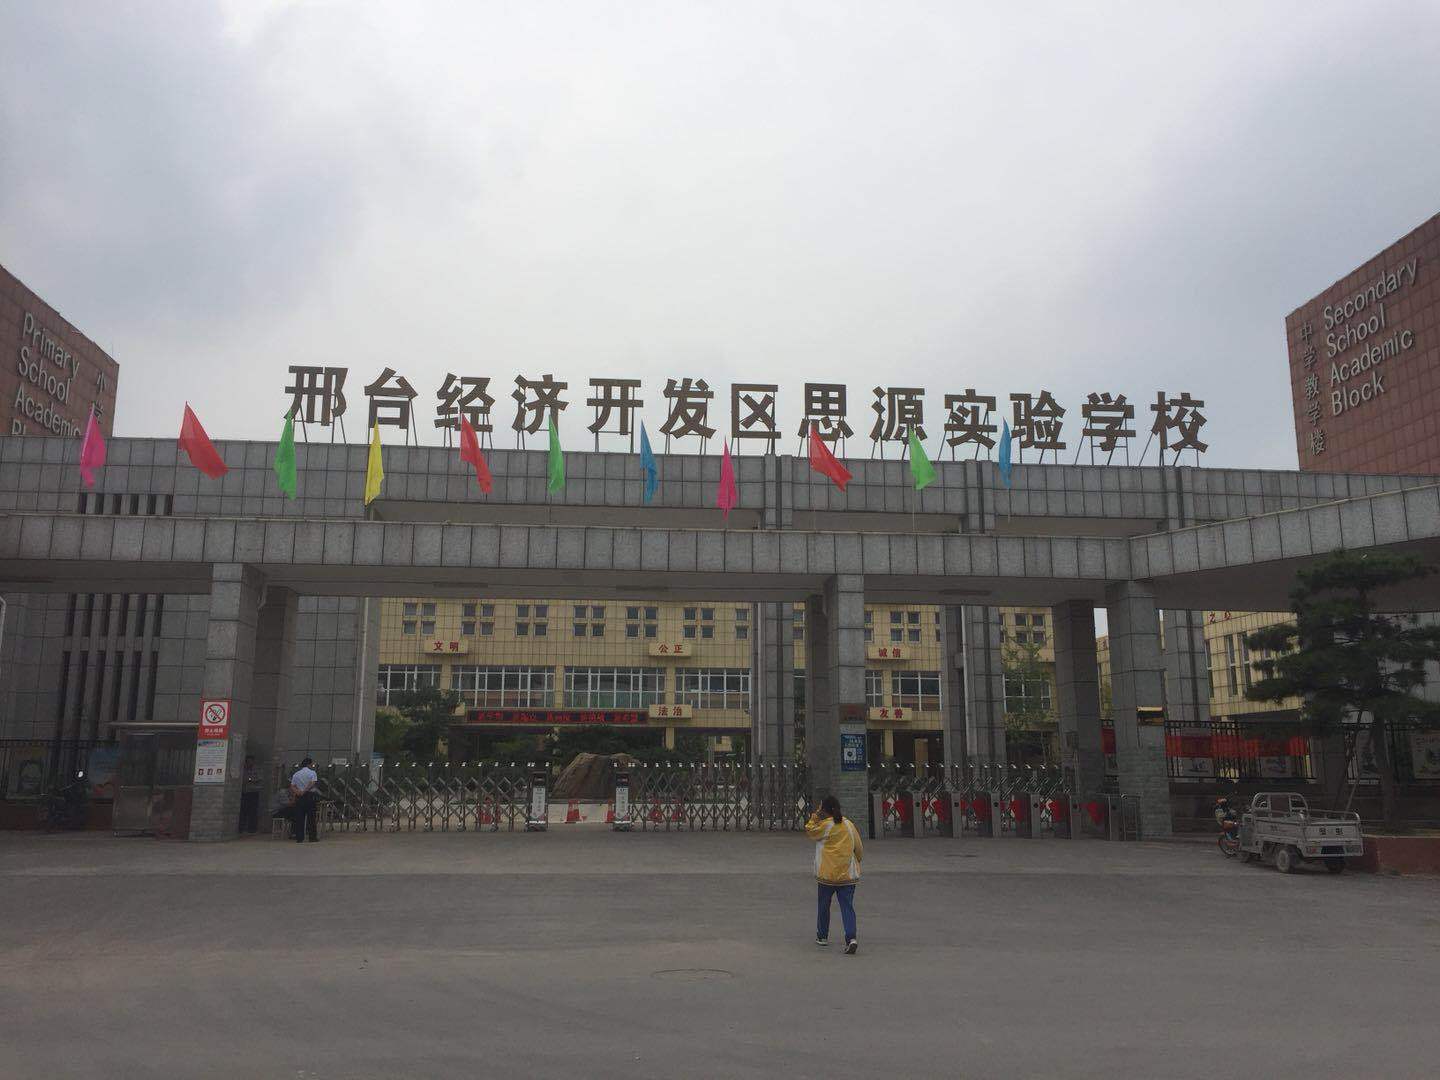 邢台经济开发区思源实验学校,是一所九年一贯制义务教育公办学校,始建